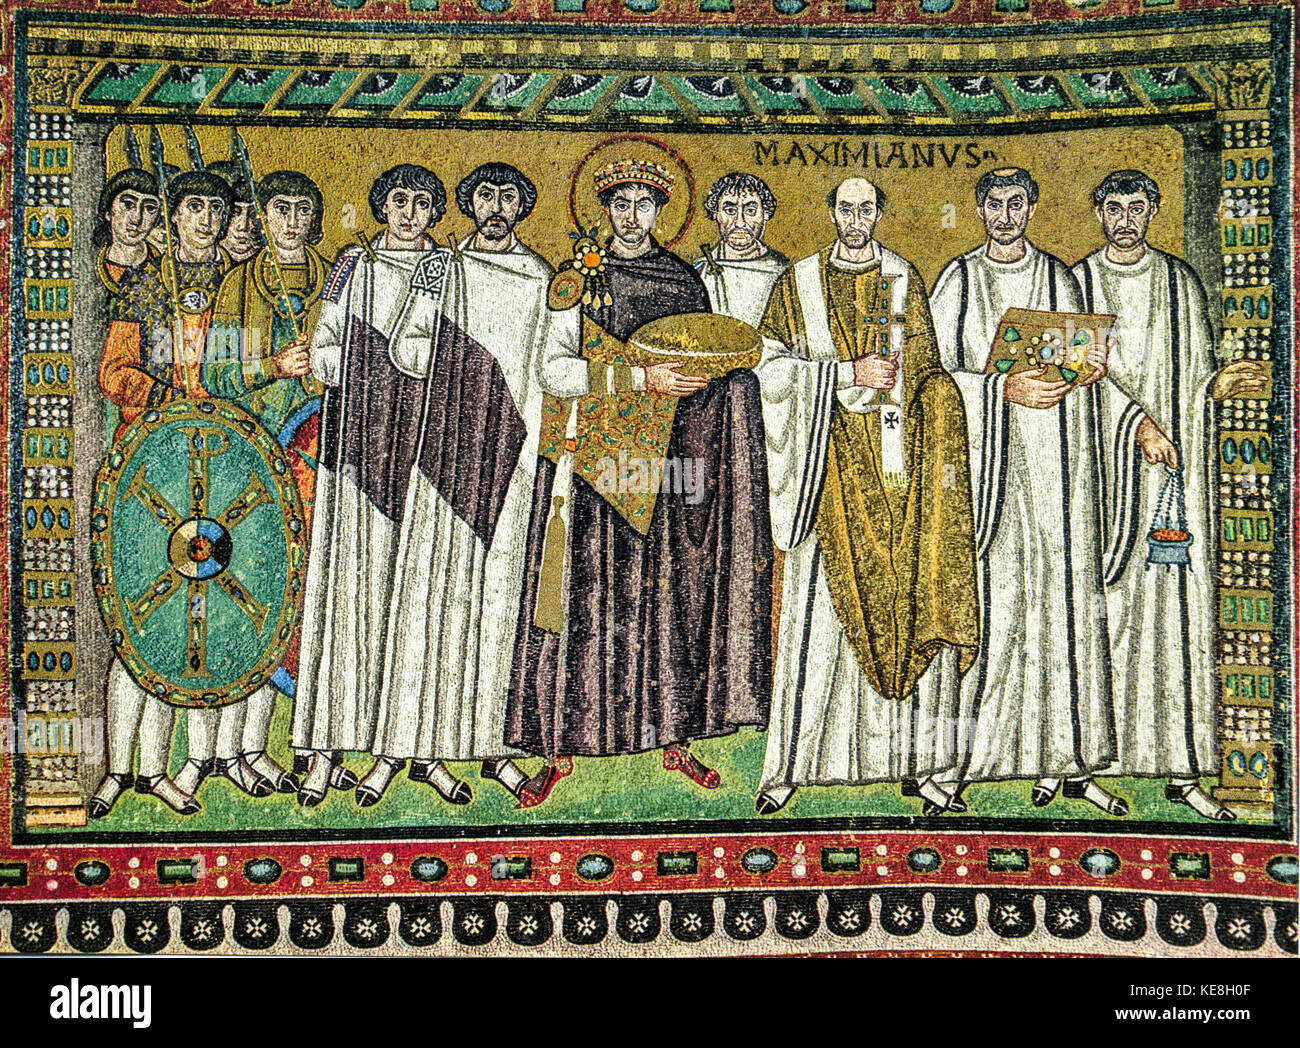 Italie emilie romagne Ravenne Basilique saint vitale -mosaïque mosaïque chorus -l'empereur Justinien et sa cour - avant 547 Banque D'Images